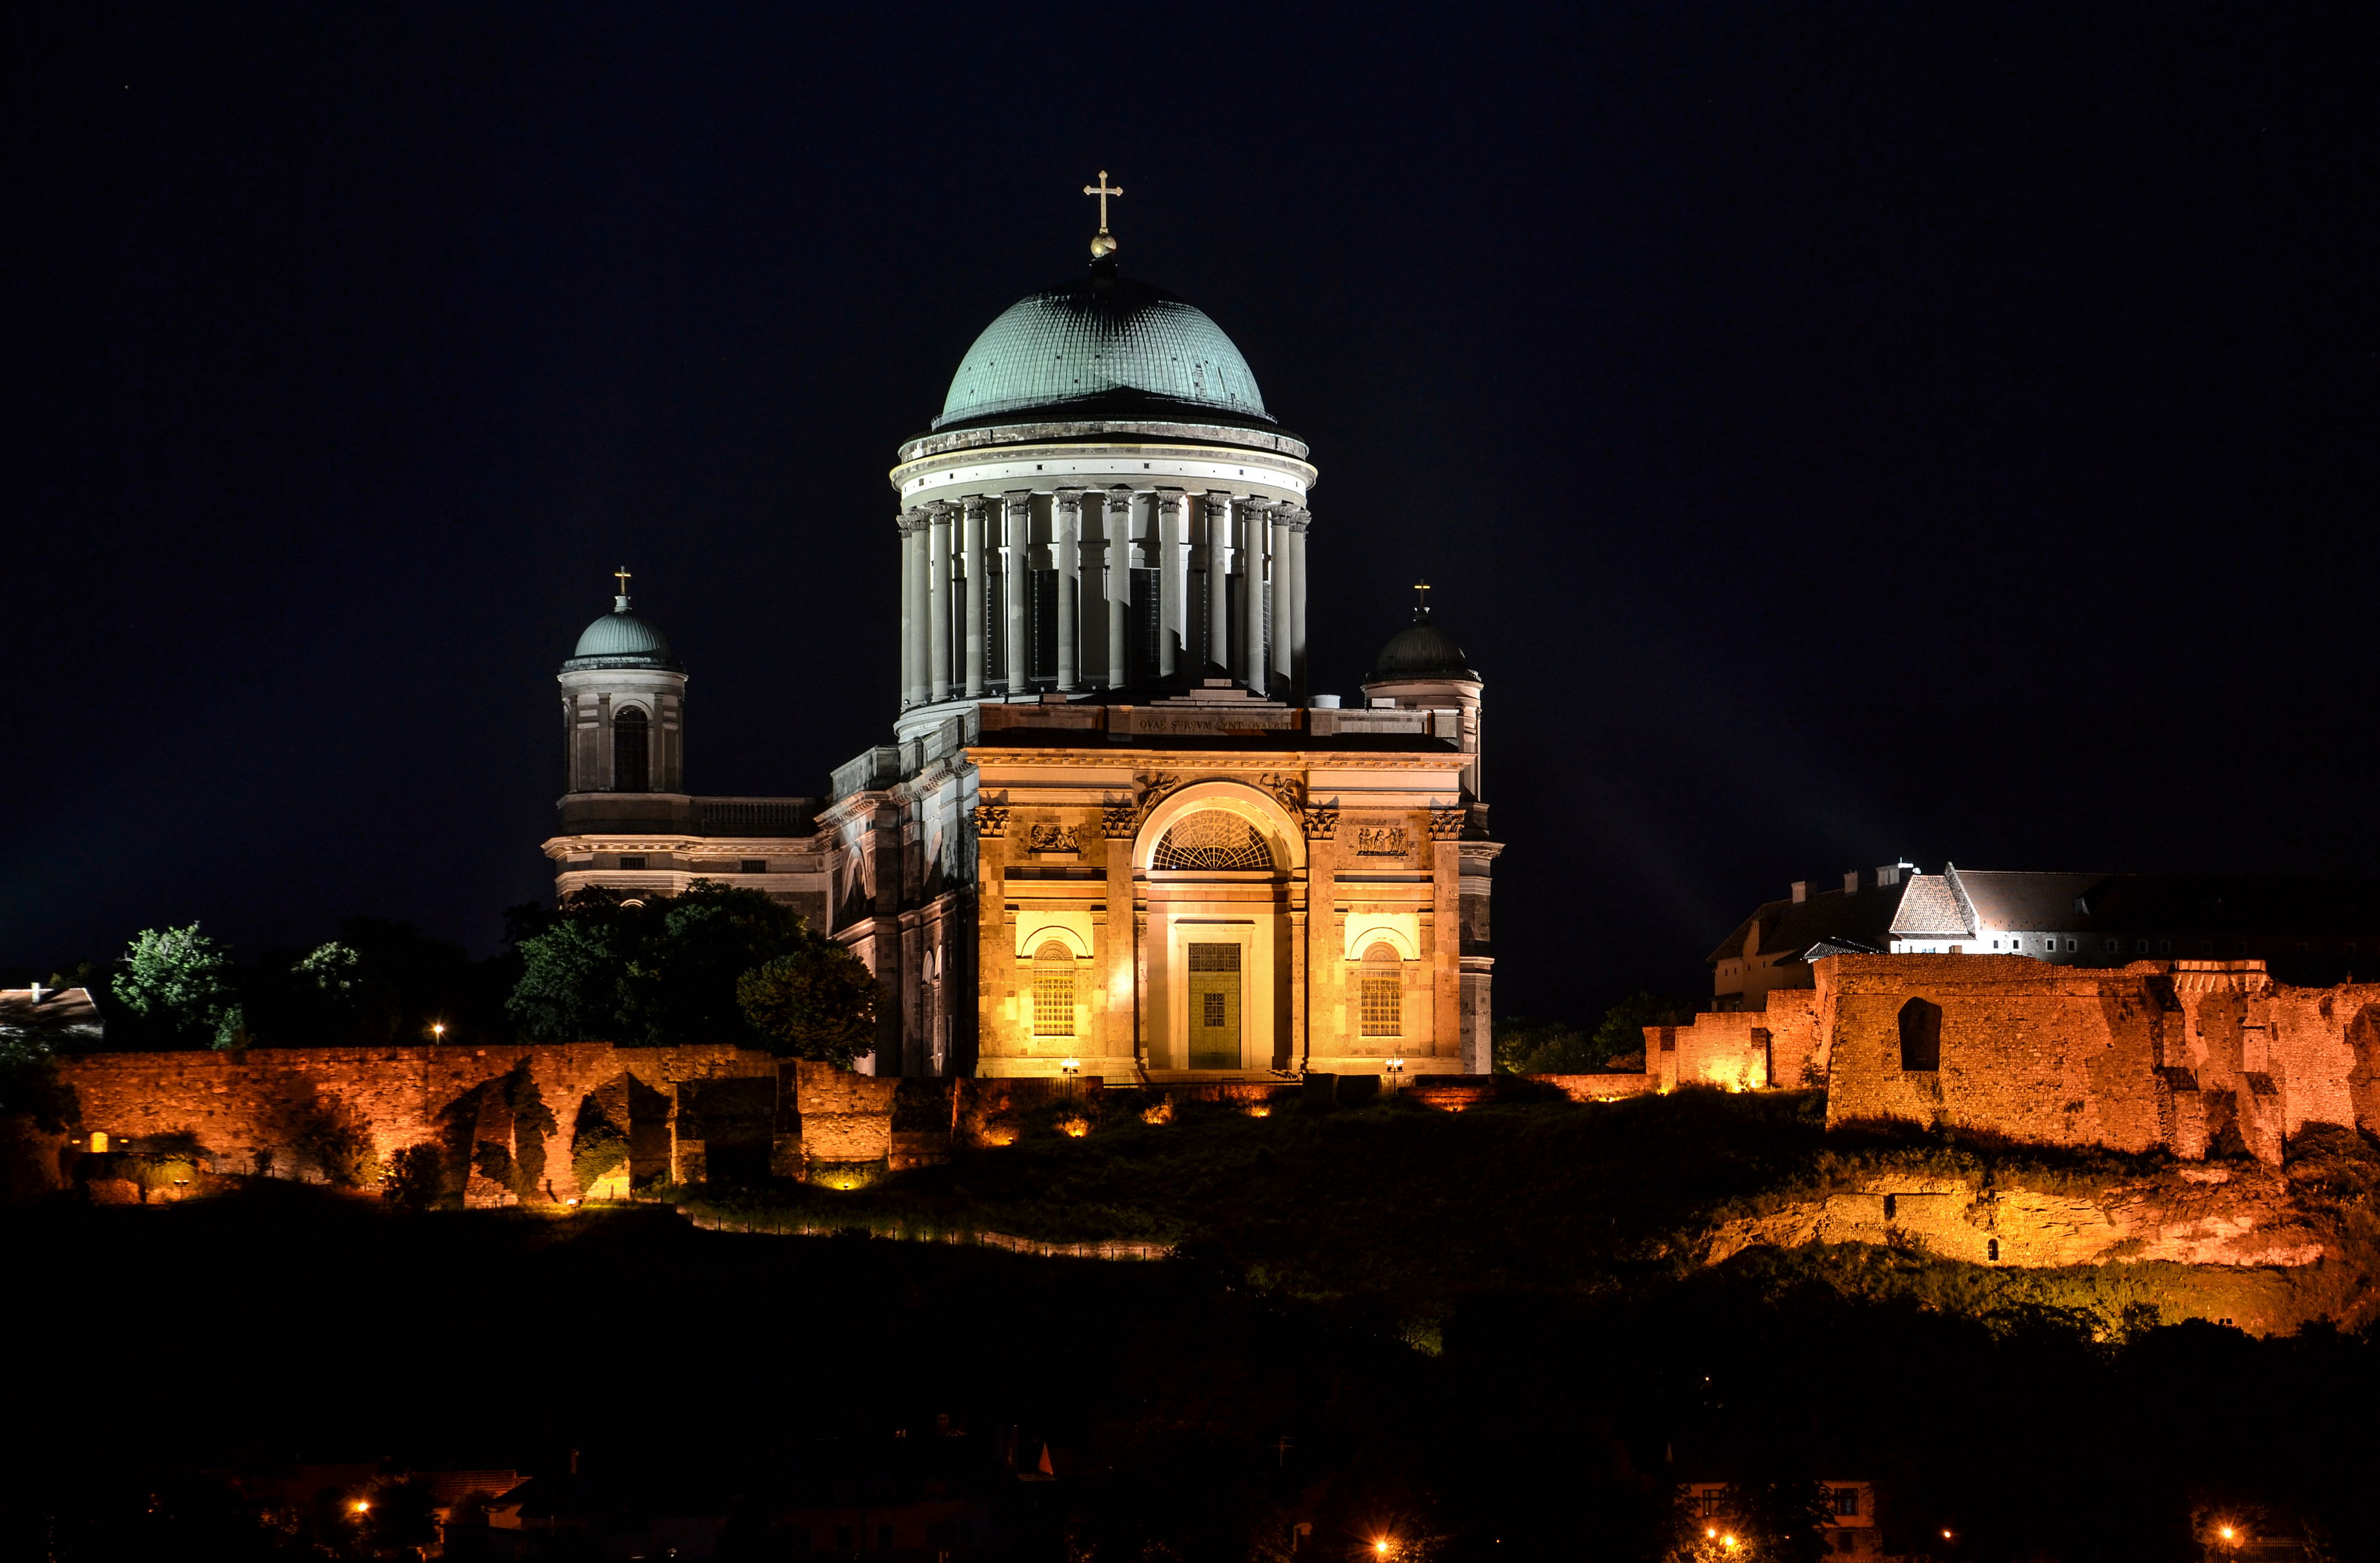 Esztergom Basilica by night 01